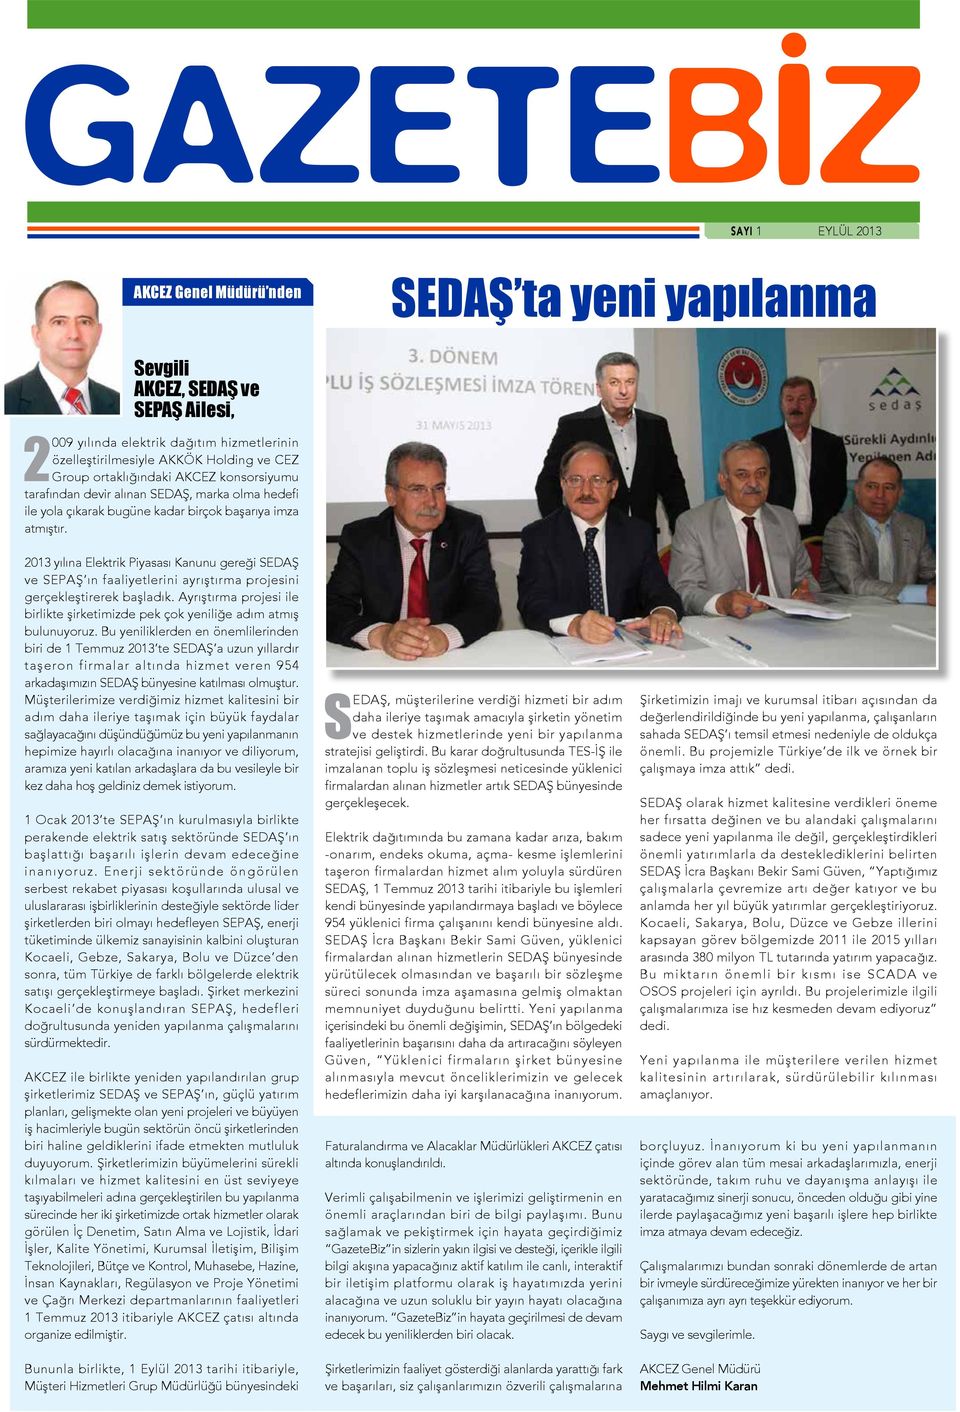 2013 yılına Elektrik Piyasası Kanunu gereği SEDAŞ ve SEPAŞ ın faaliyetlerini ayrıştırma projesini gerçekleştirerek başladık.